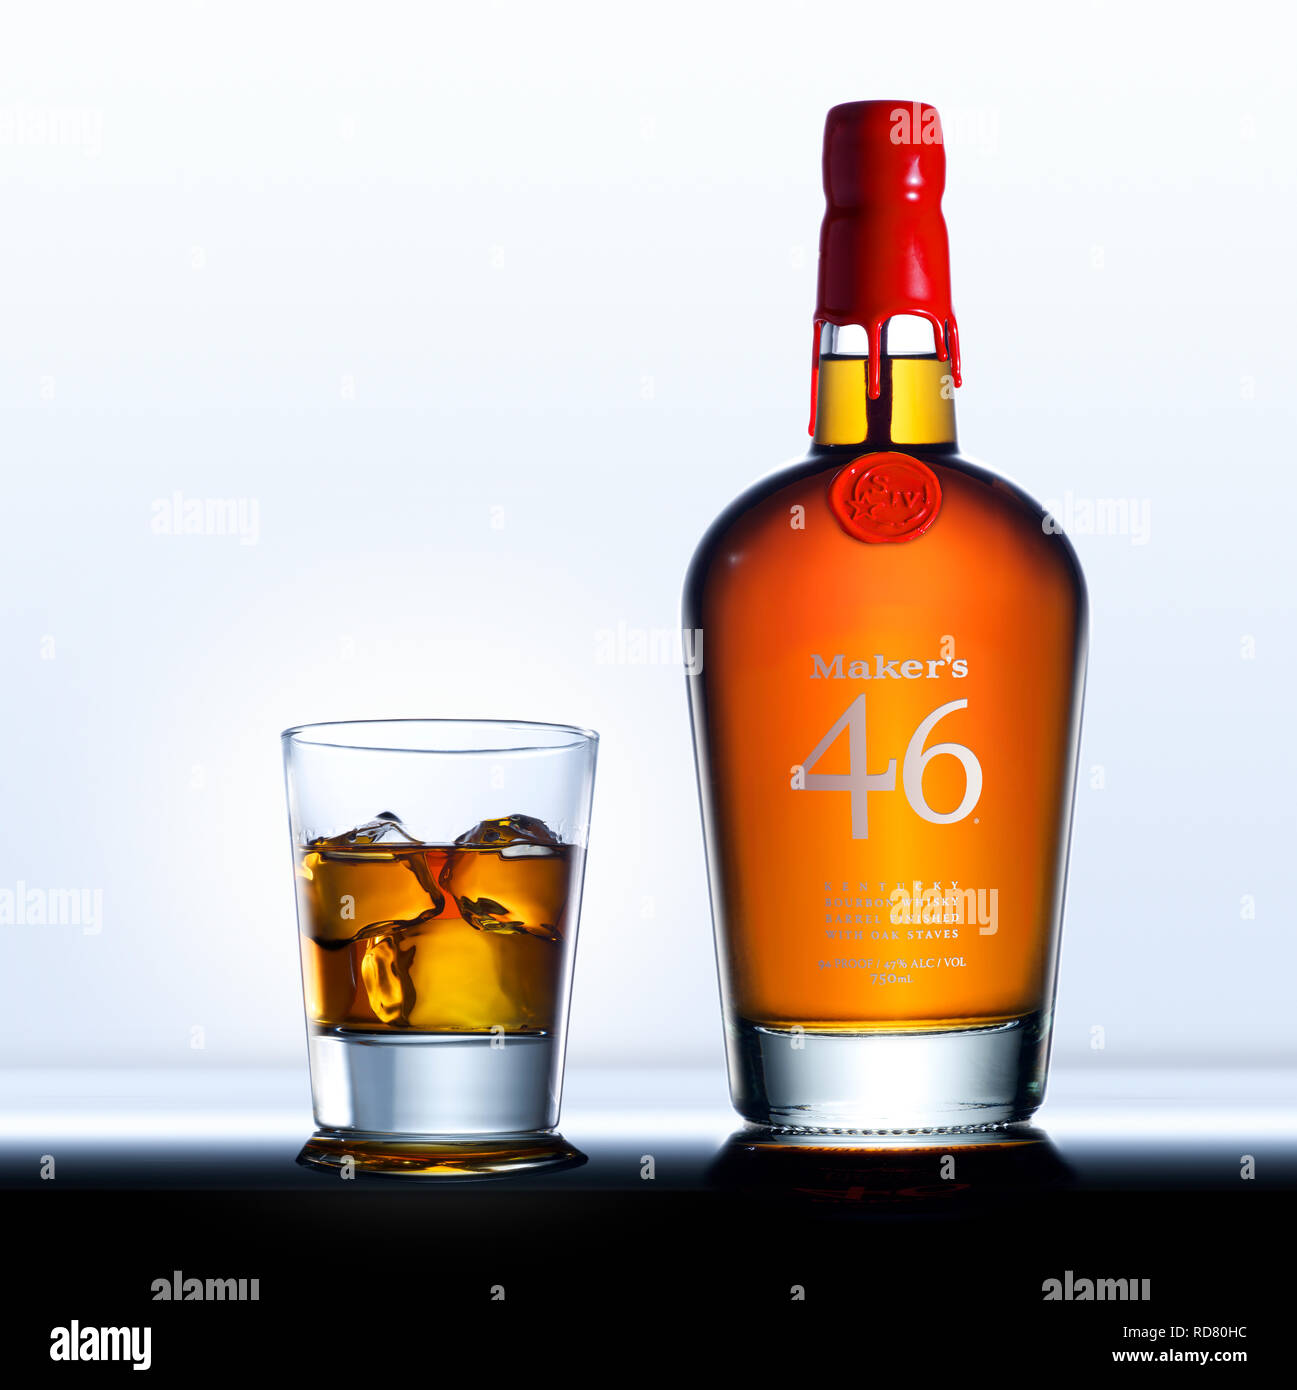 Marque d'origine 46 bouteille de whisky et verre, studio shot Banque D'Images